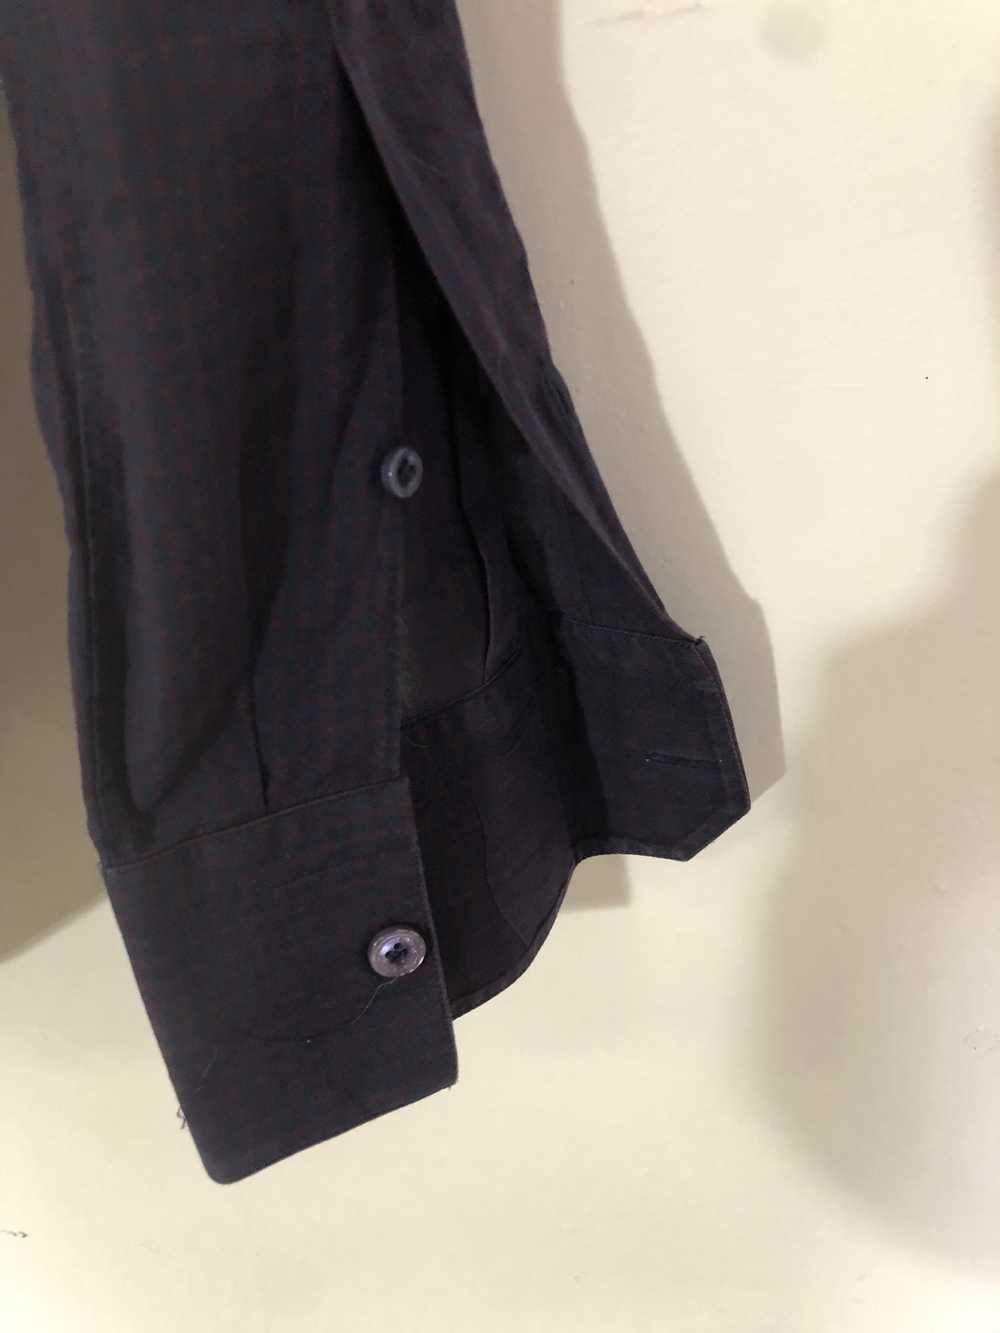 Lanvin Tuxedo Style Pleated Placket Dress Shirt - image 6